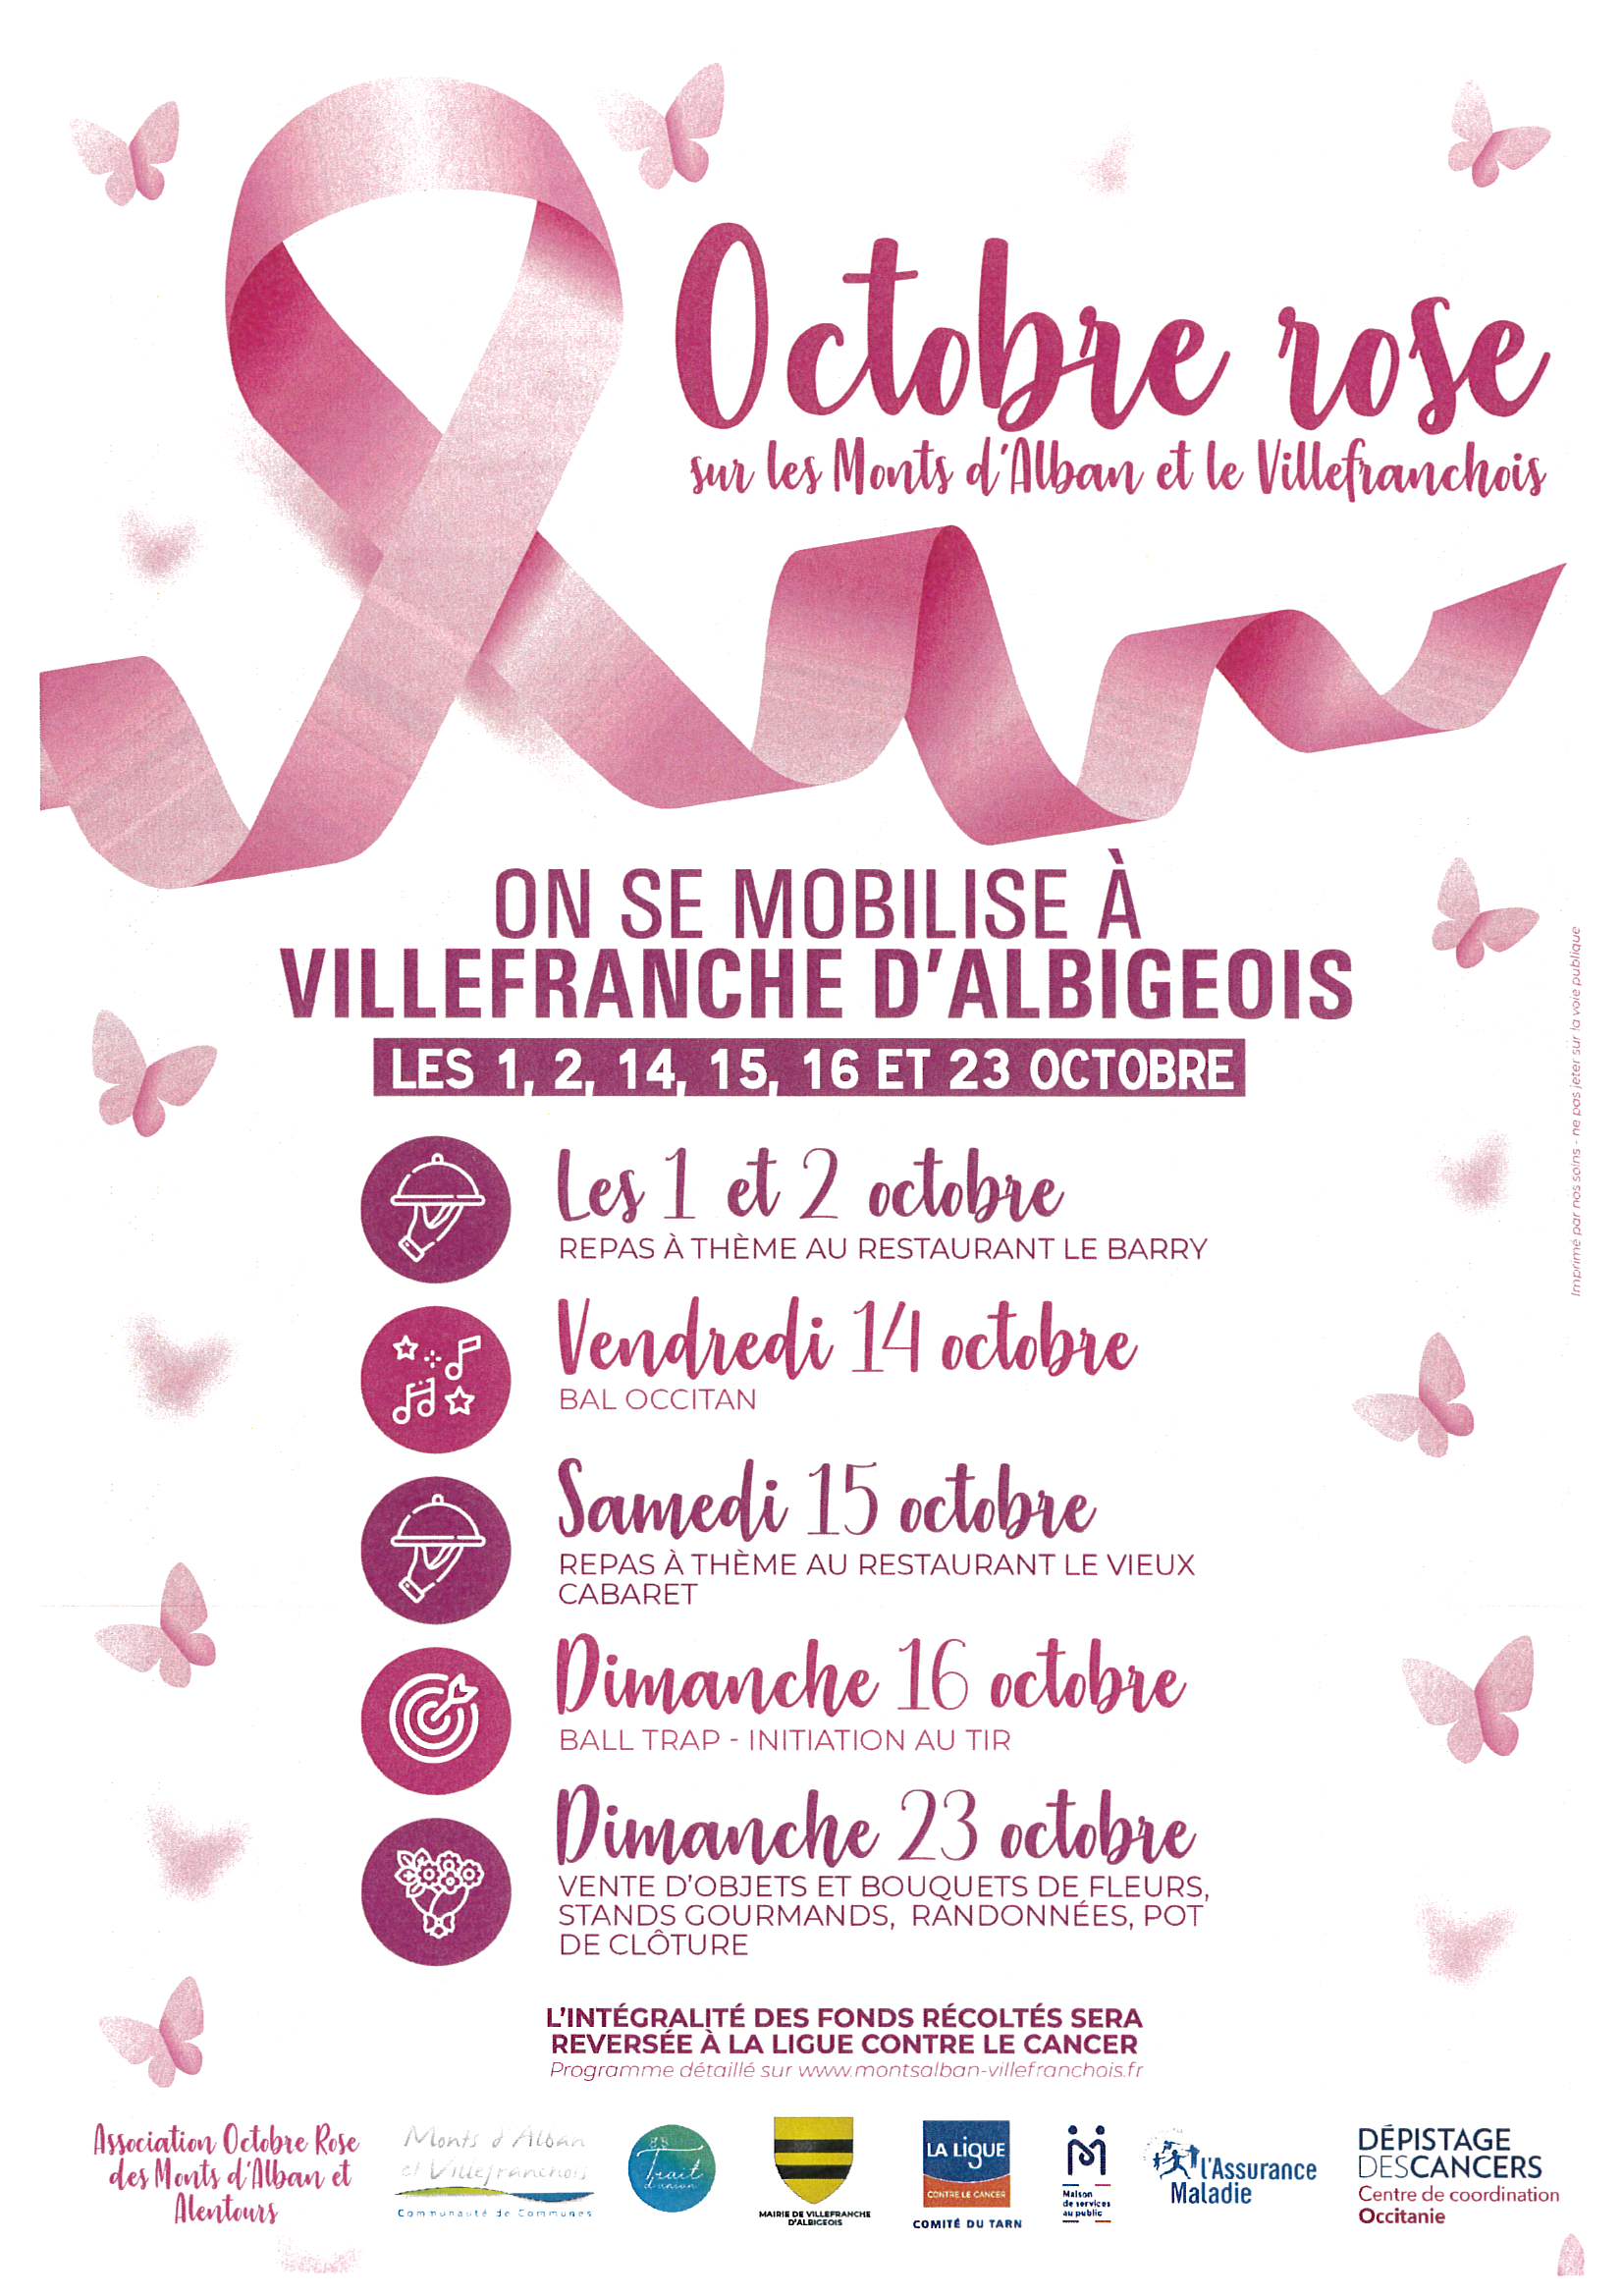 Octobre Rose : Villefranche d'Albigeois se mobilise contre le cancer